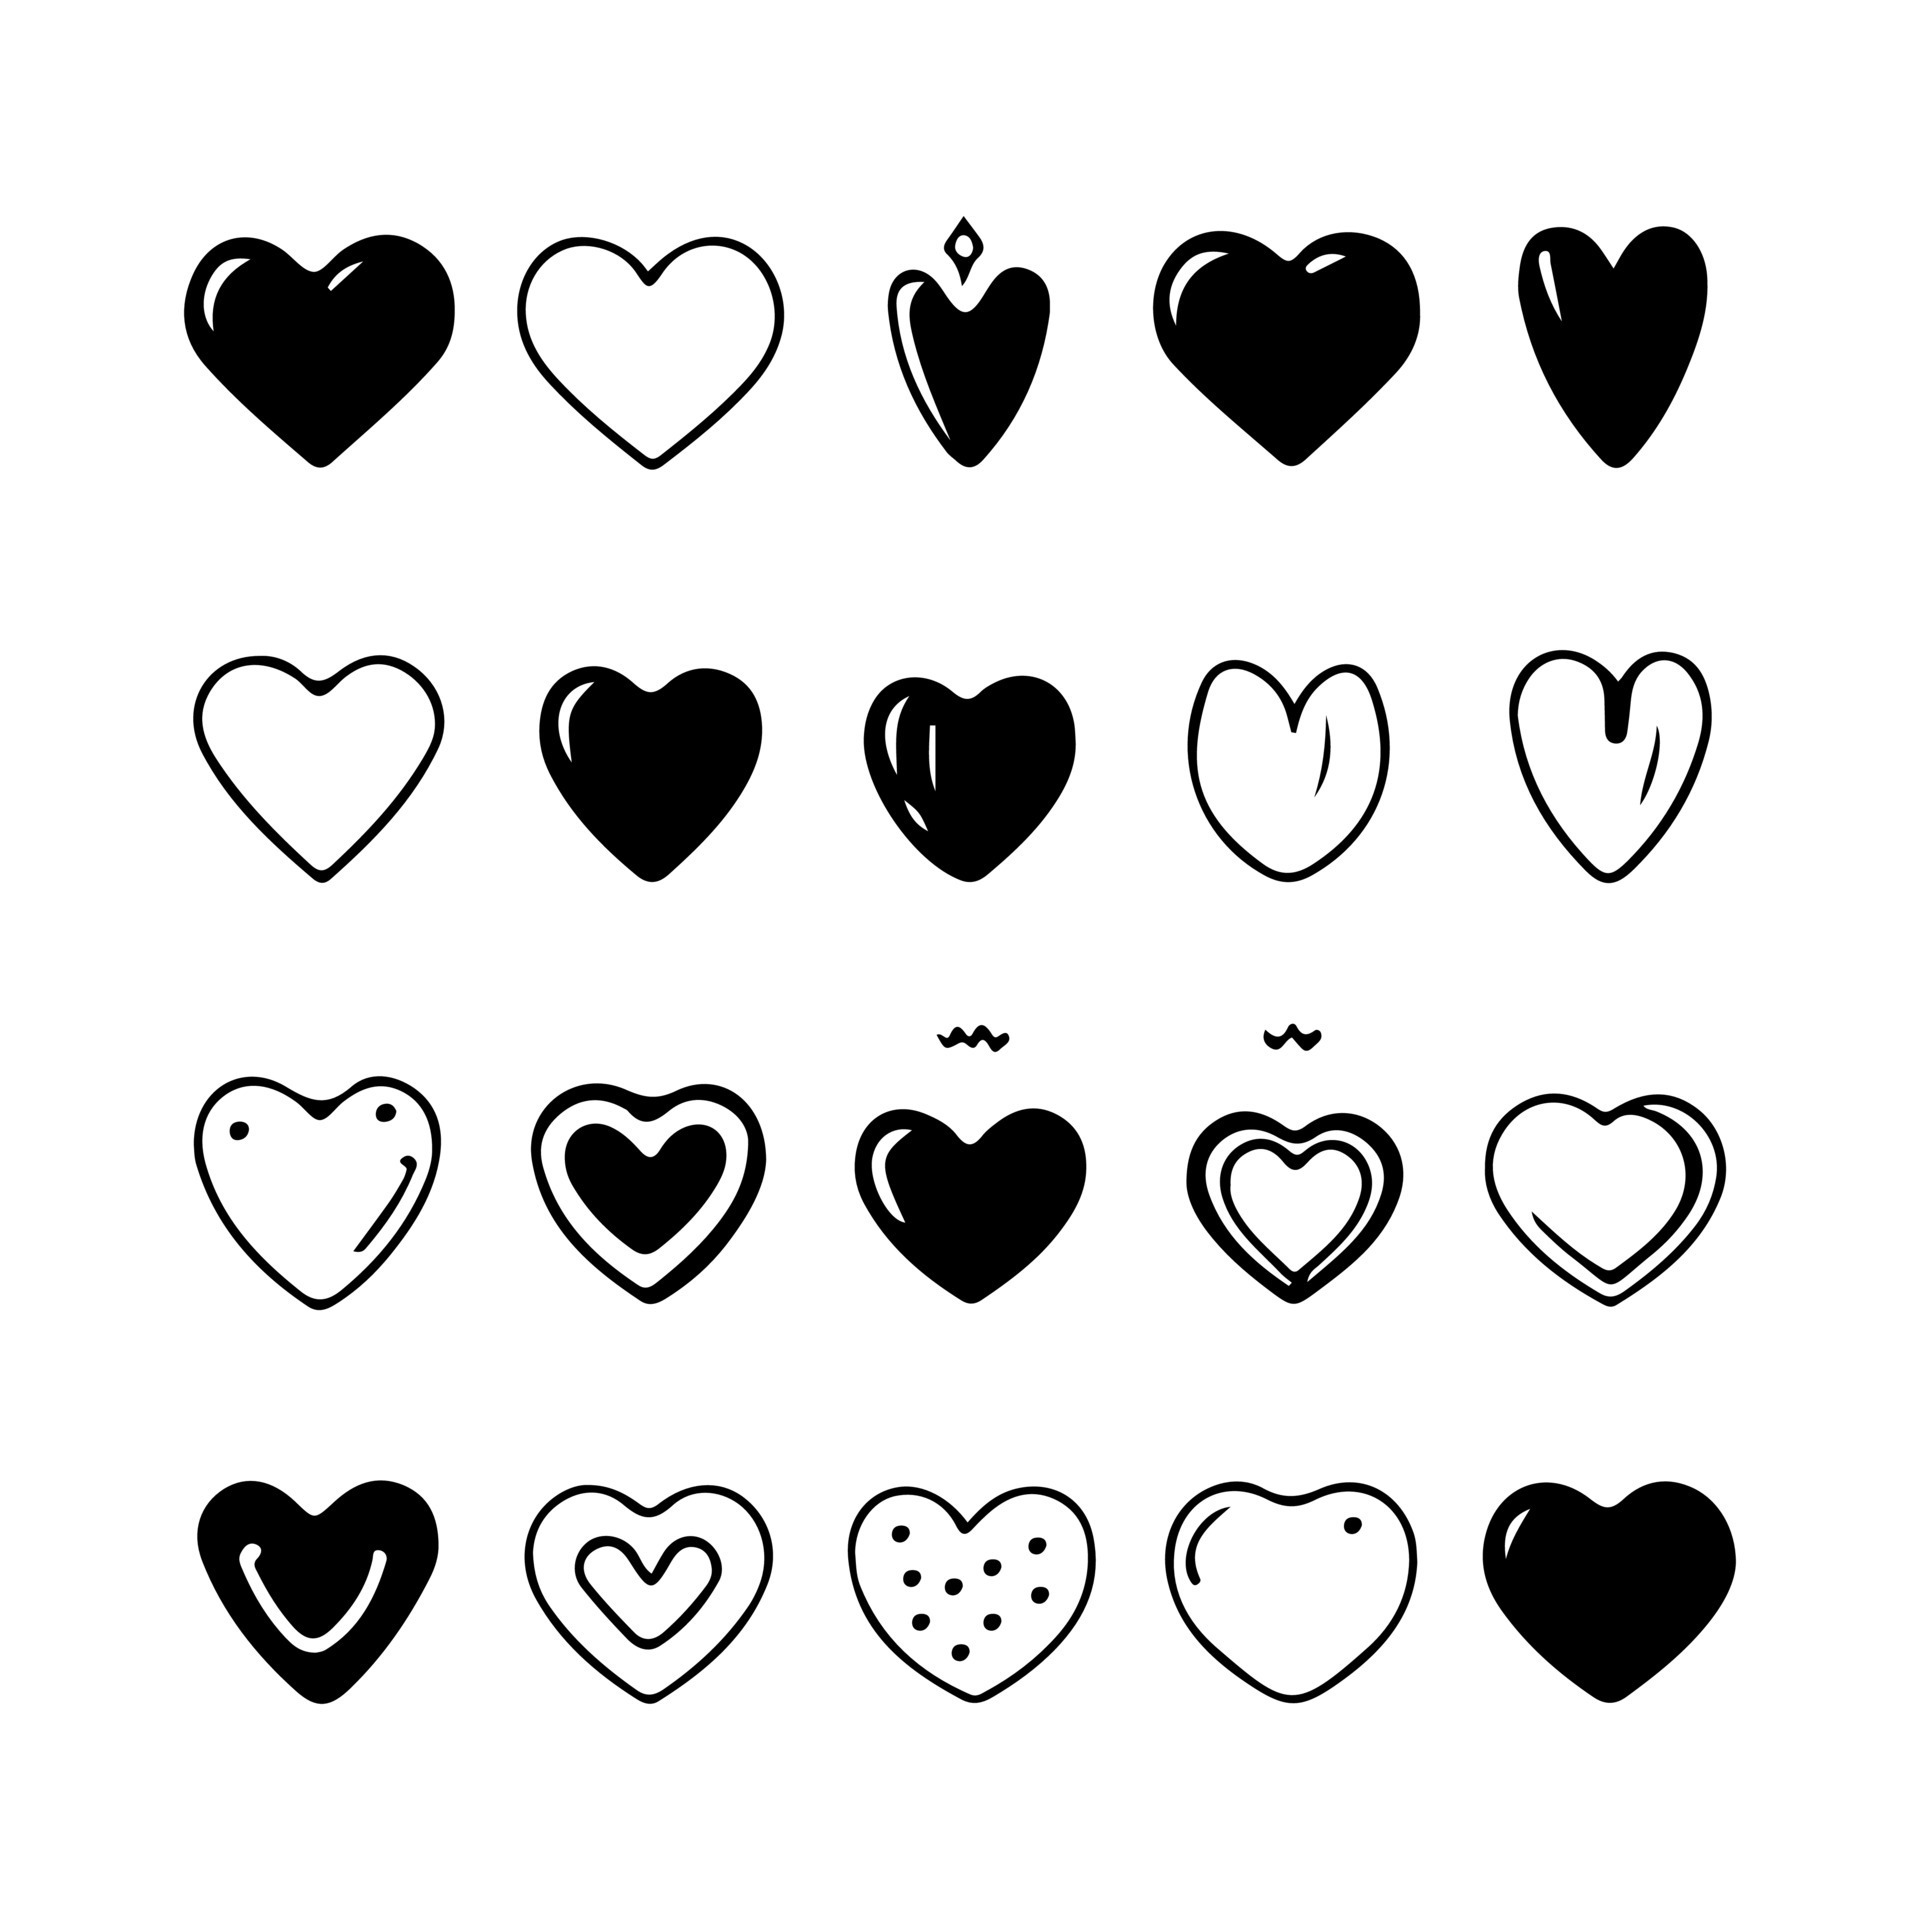 Corações bonitos do doodle, desenhos de coração desenhado à mão. rabisco de  coração de seta cupido, rabiscos de símbolo de amor, conjunto de vetor de  elementos de desenho de namorados. objetos românticos